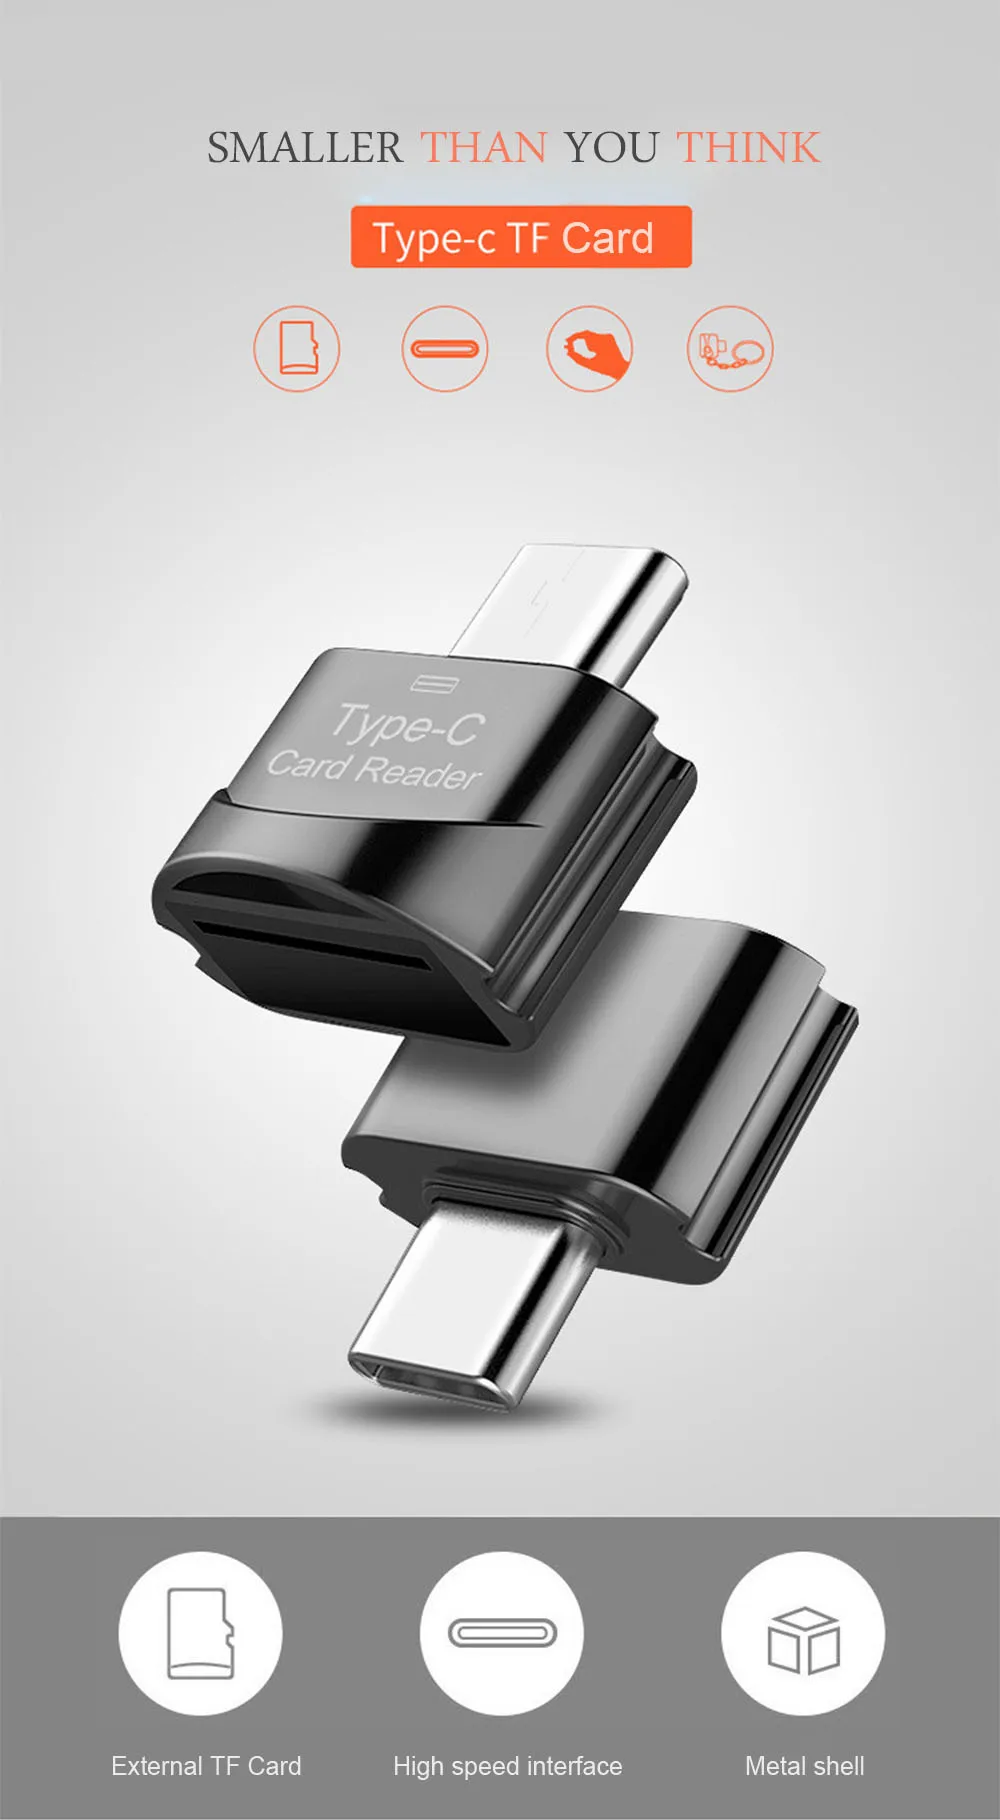 Мини-считыватель карт C Тип TF карта к type-c считыватель карт OTG адаптер USB 3,1 кардридер для мобильных телефонов